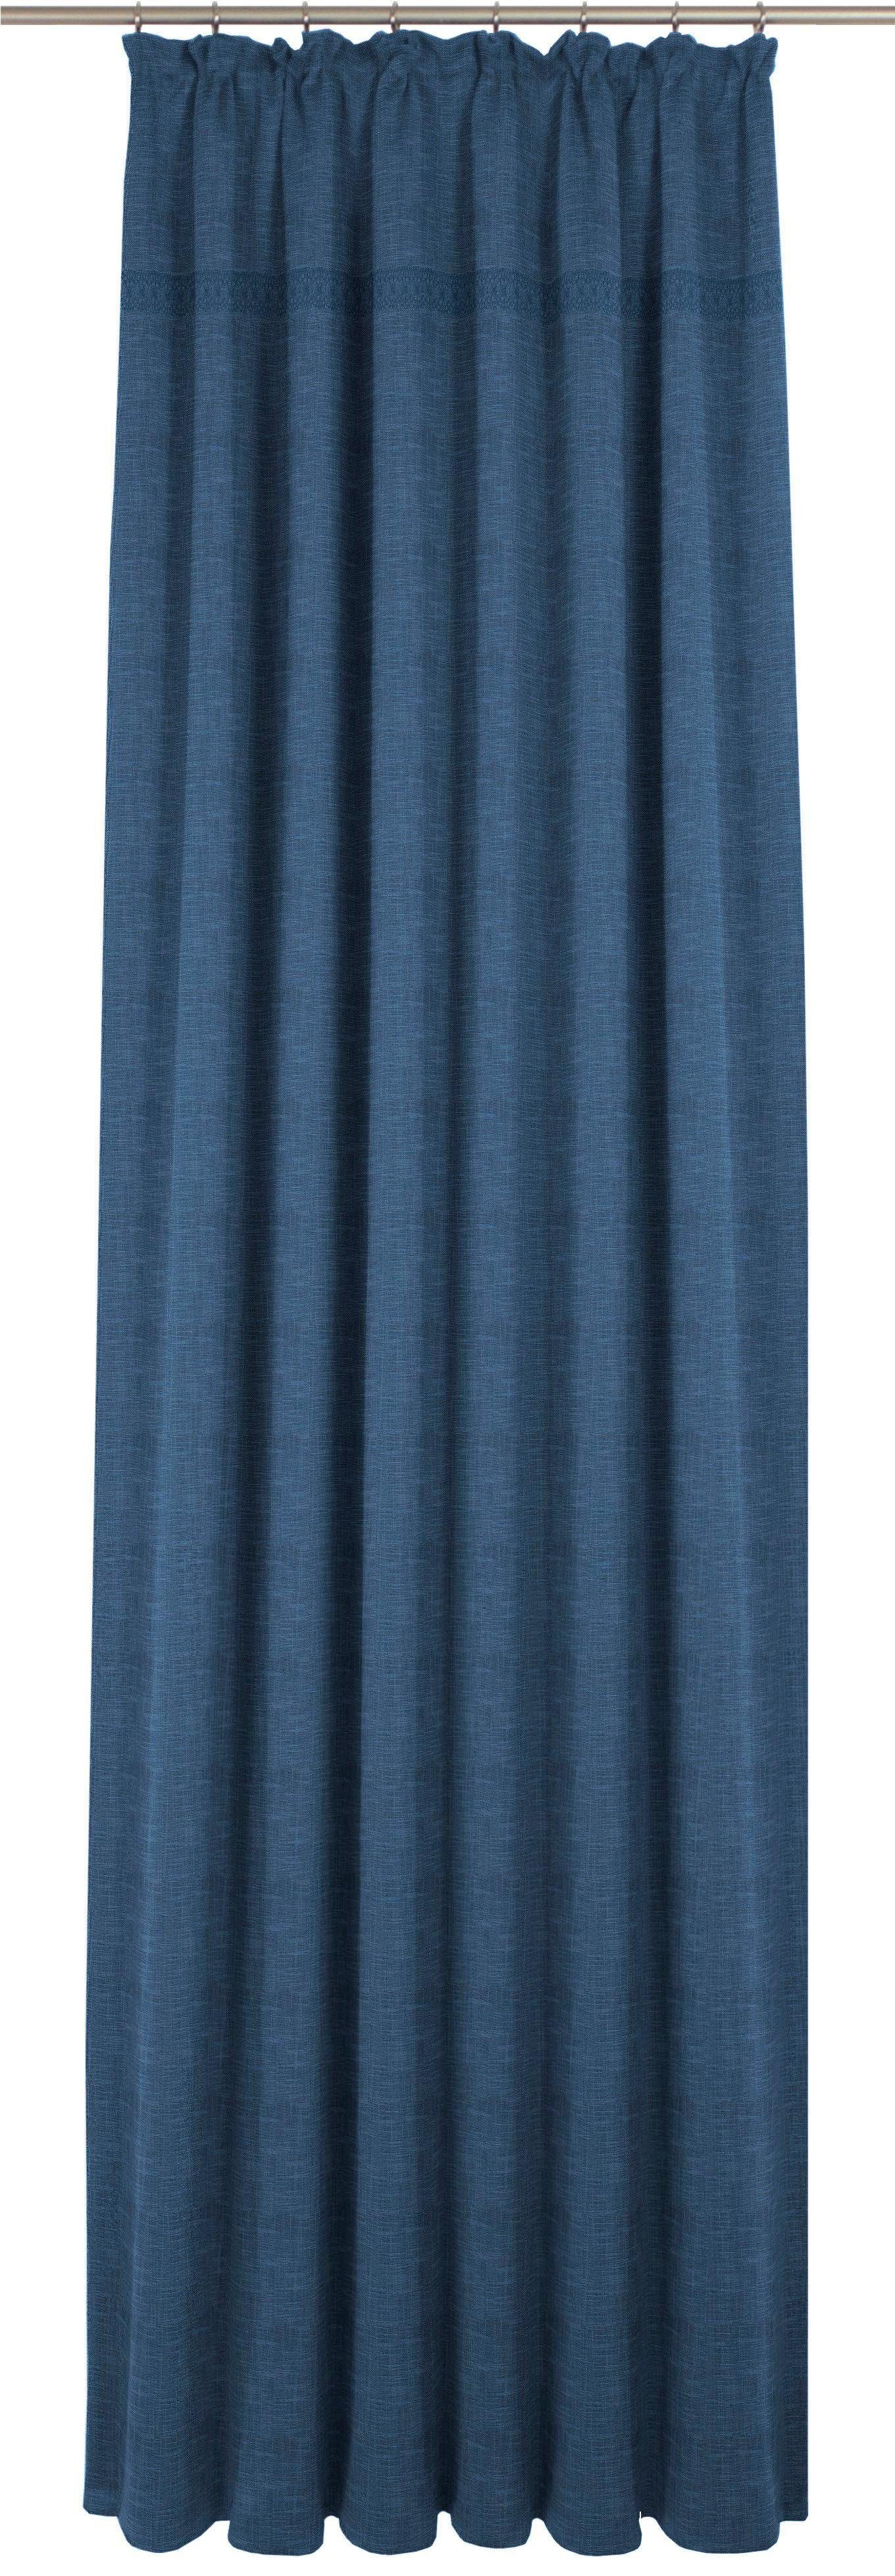 Vorhang Wiessee, Wirth, Kräuselband (1 St), blickdicht, Jacquard blau